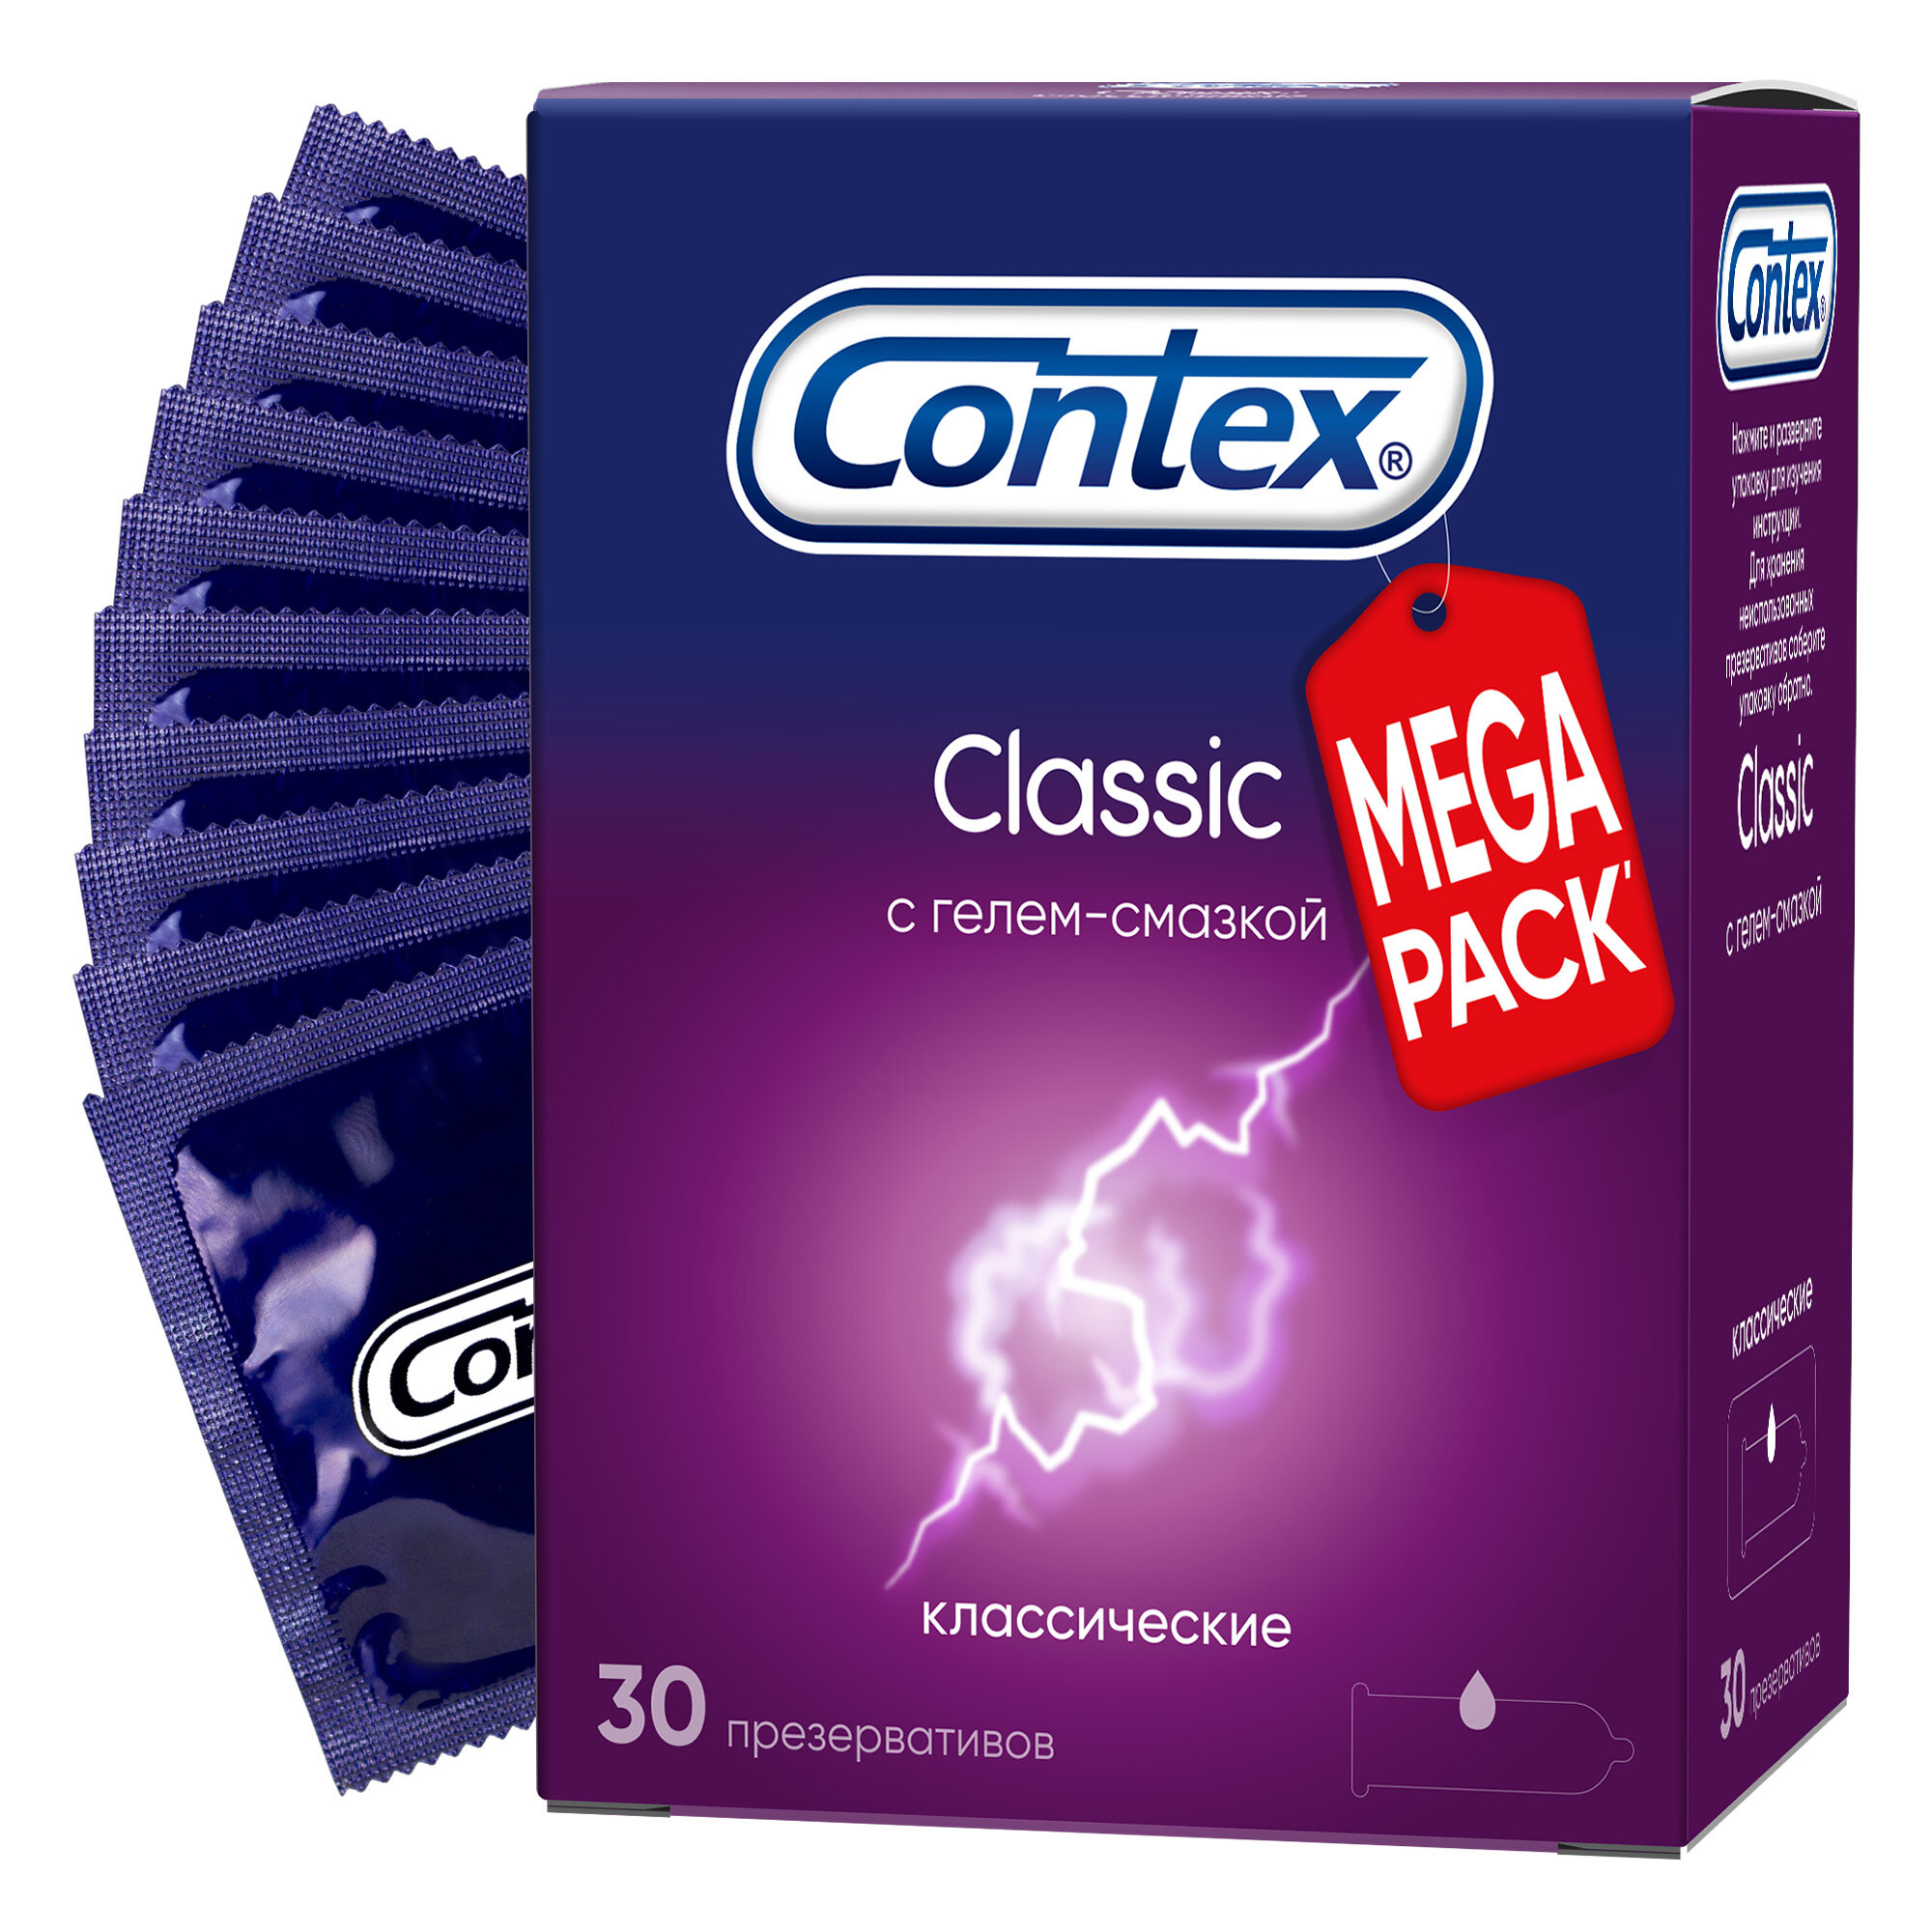 Презервативы Contex Classic, классические, с гелем-смазкой, 30 шт.